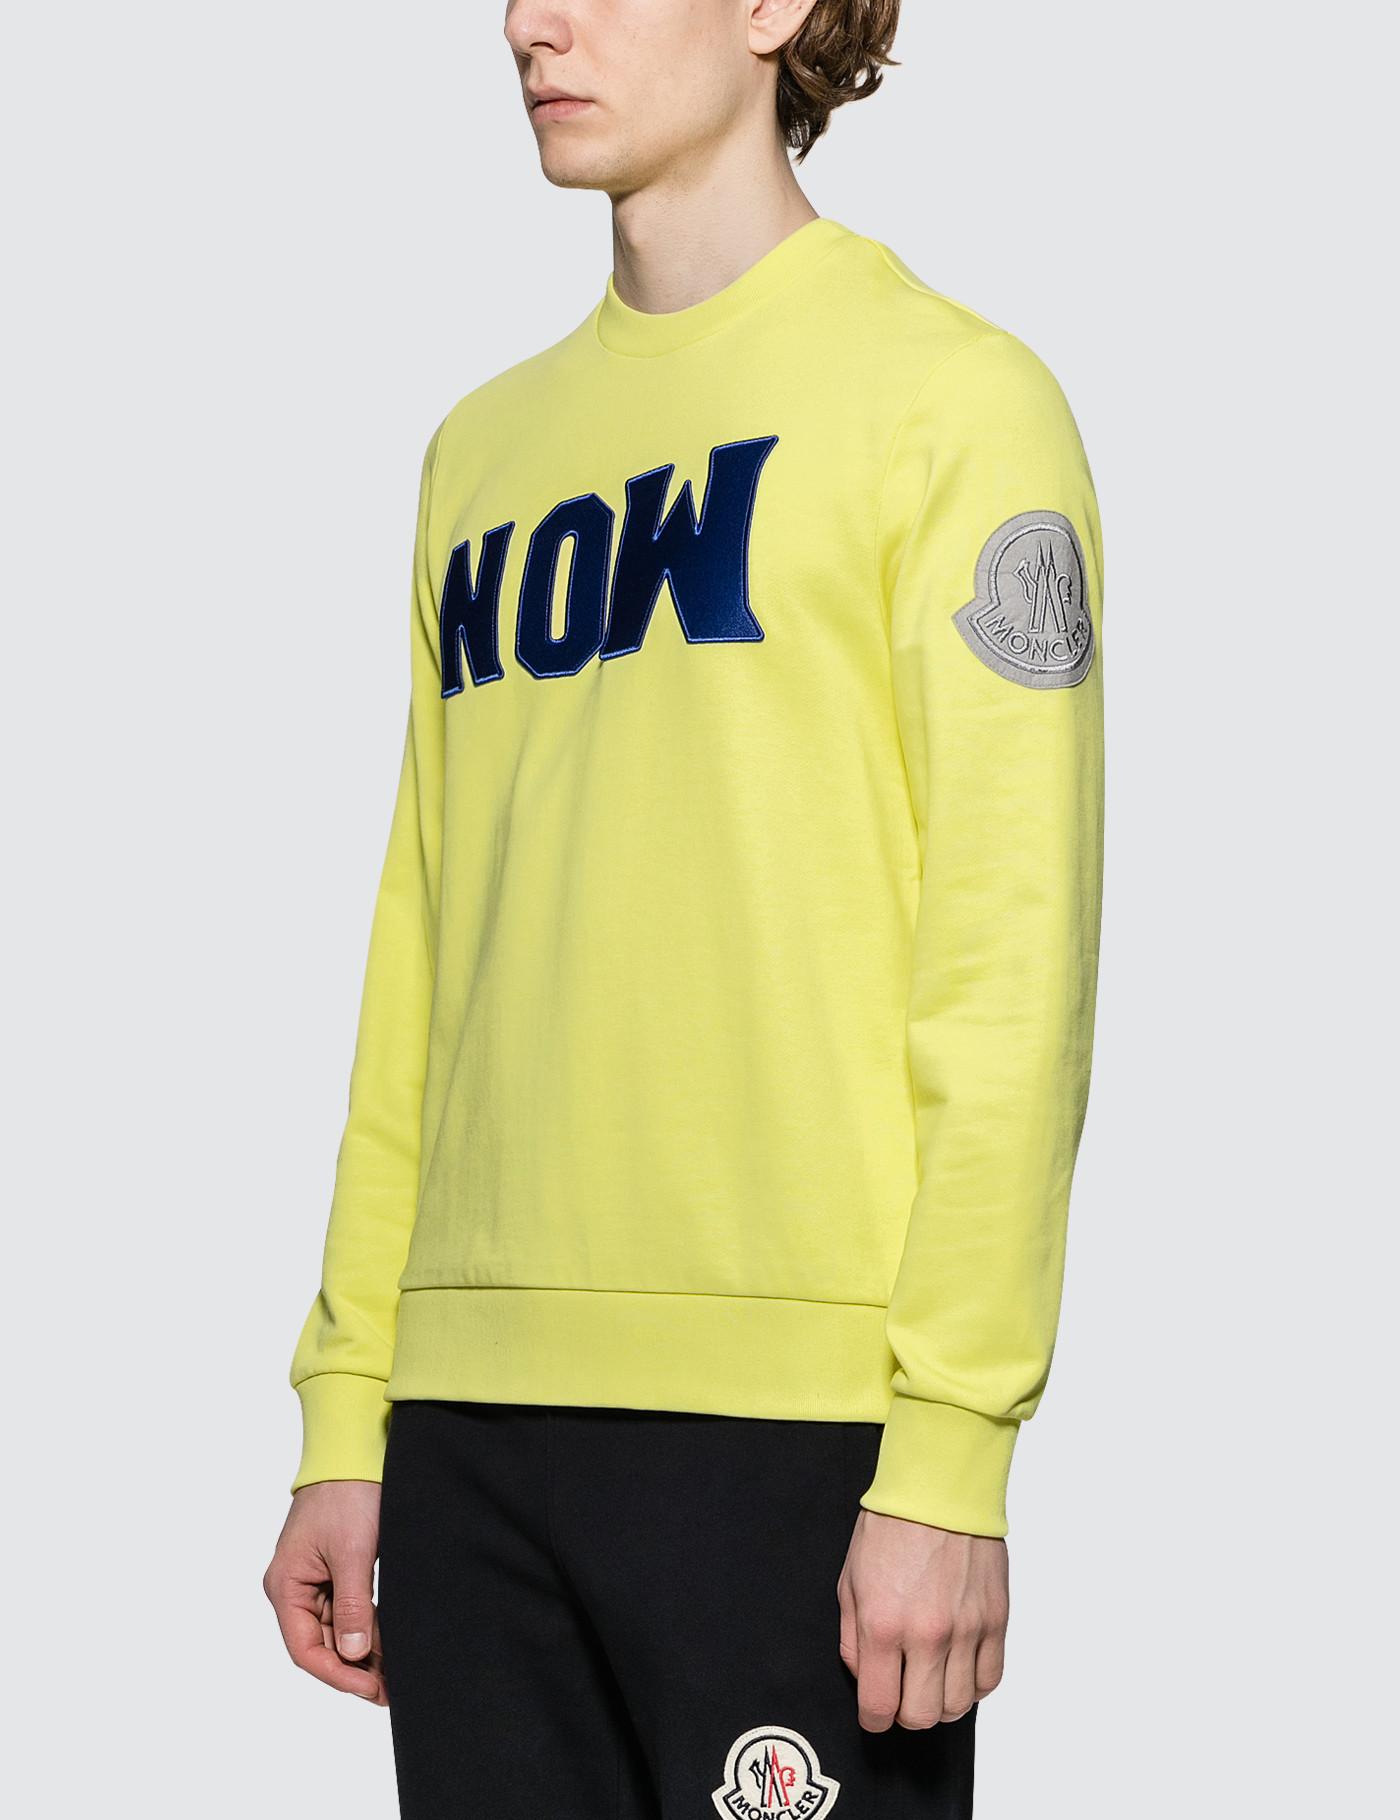 Moncler Genius Cotton 1952 Now Sweatshirt in Yellow for Men - Lyst